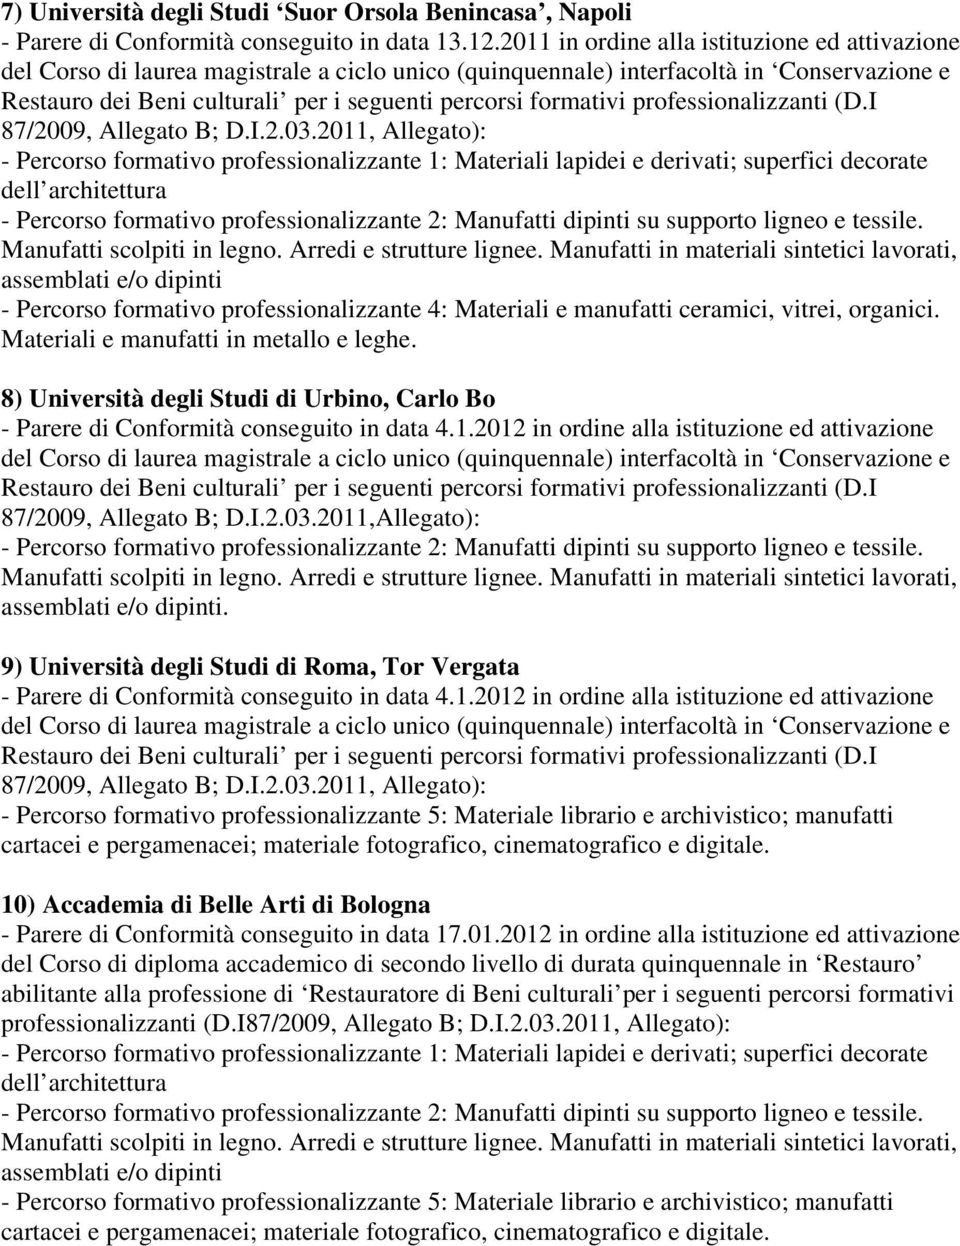 2011,Allegato):. 9) Università degli Studi di Roma, Tor Vergata - Parere di Conformità conseguito in data 4.1.2012 in ordine alla istituzione ed attivazione 87/2009, Allegato B; D.I.2.03.